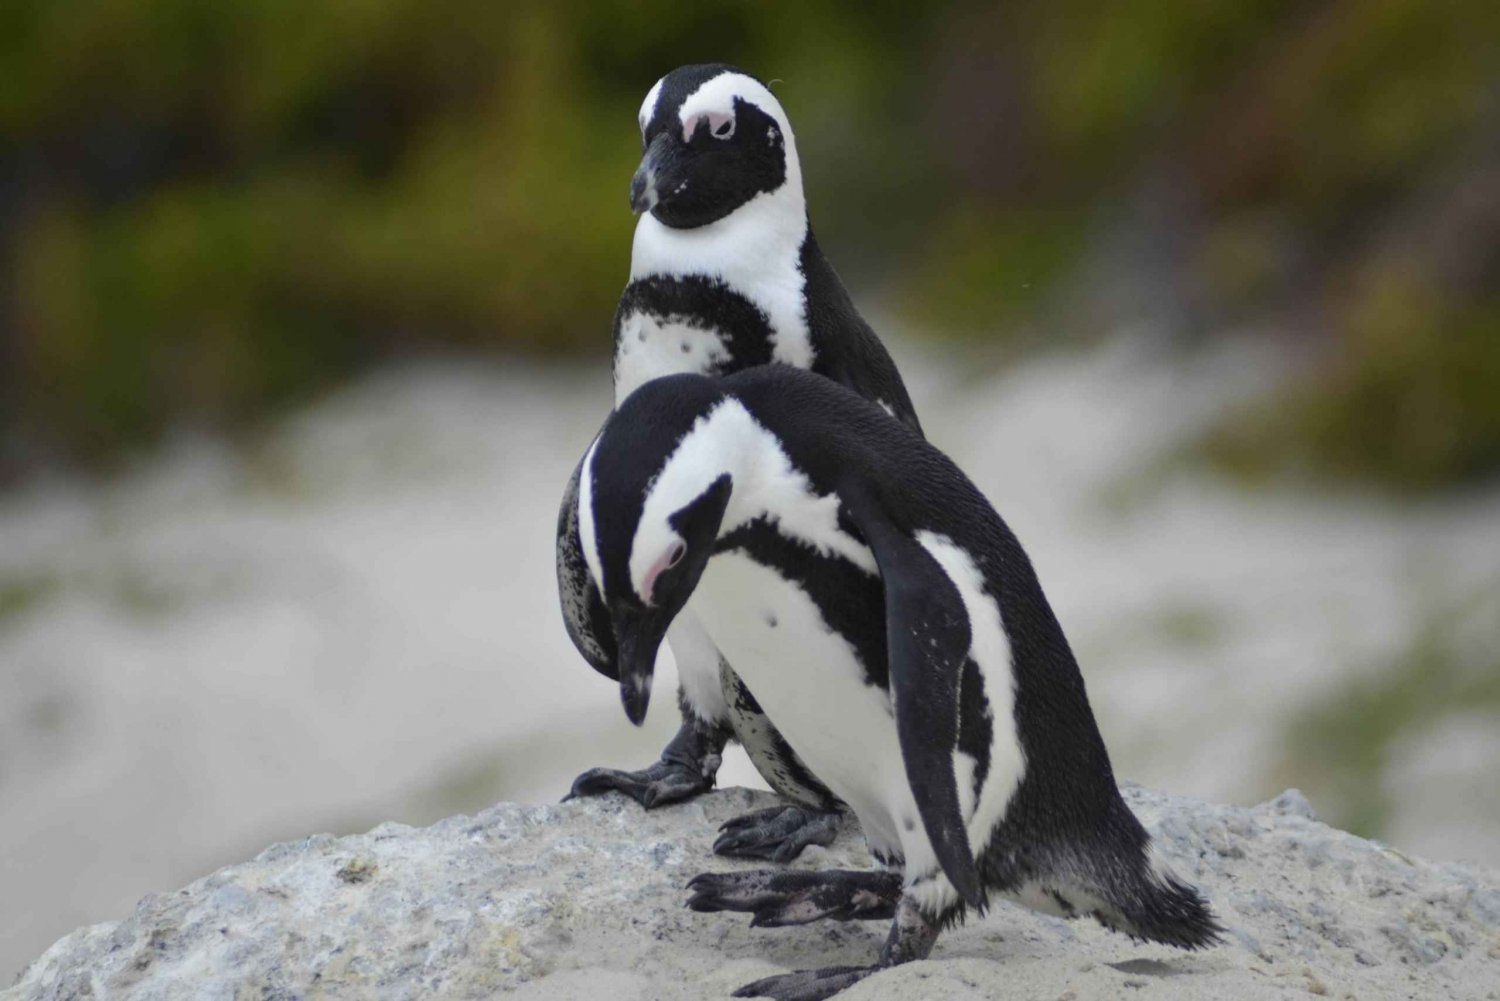 Från Kapstaden: Halvdagstur till Boulders Beach och pingvinerna